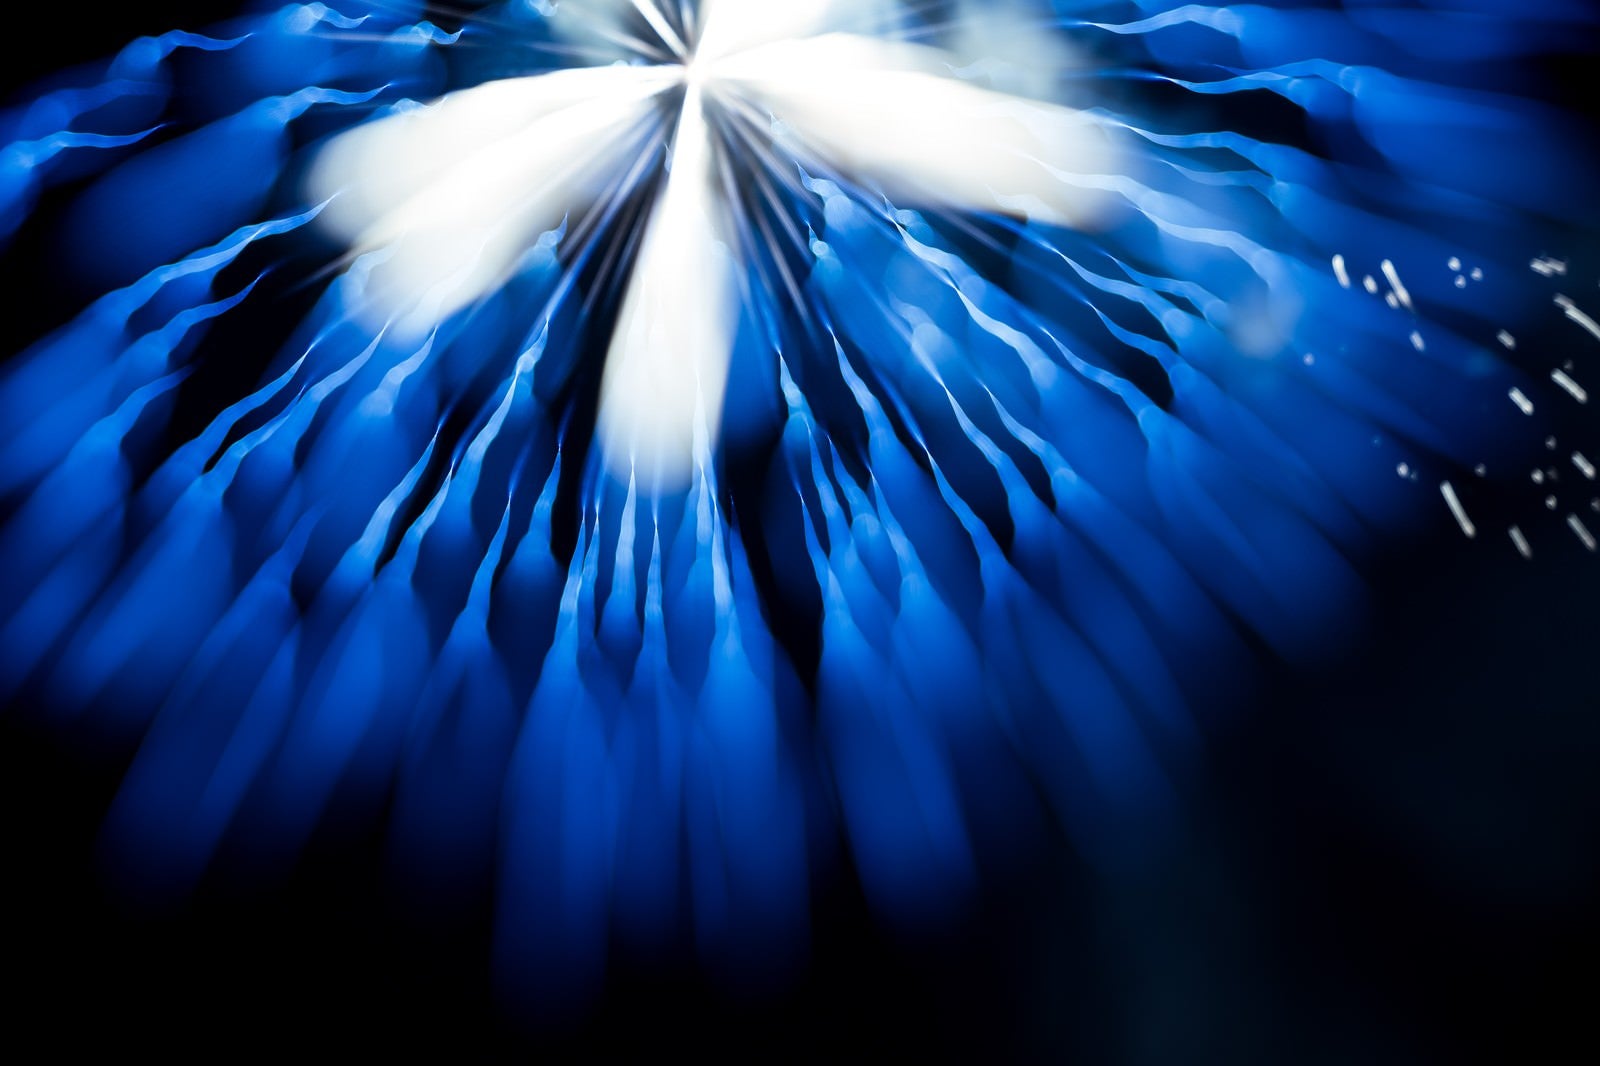 「ゆらゆらと夜空を泳ぐ、青い花火」の写真